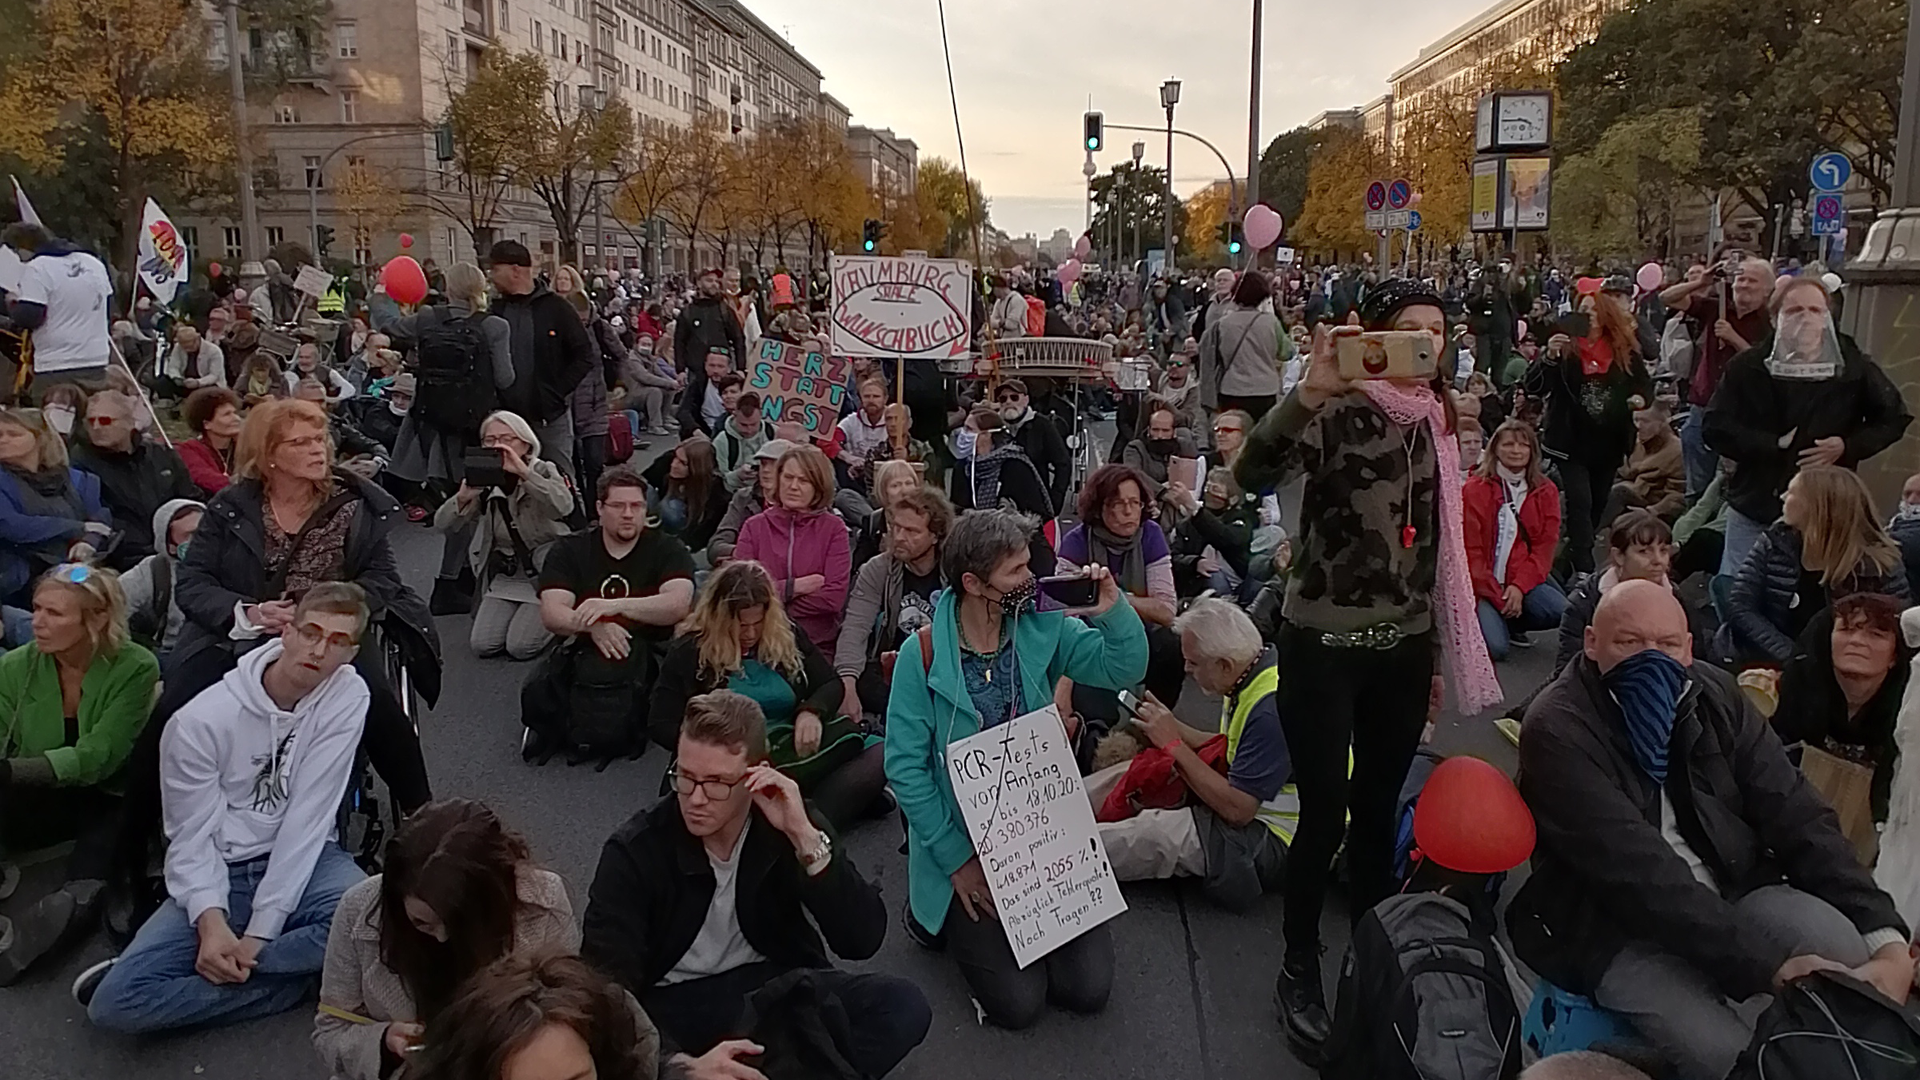 Kein Abstand und kein Mund-Nasen-Schutz: In Berlin wurde am 25. Oktober eine Demonstration von „Querdenken“ aufgelöst, obwohl die Veranstalter spontan einen Gottesdienst ausgerufen hatten